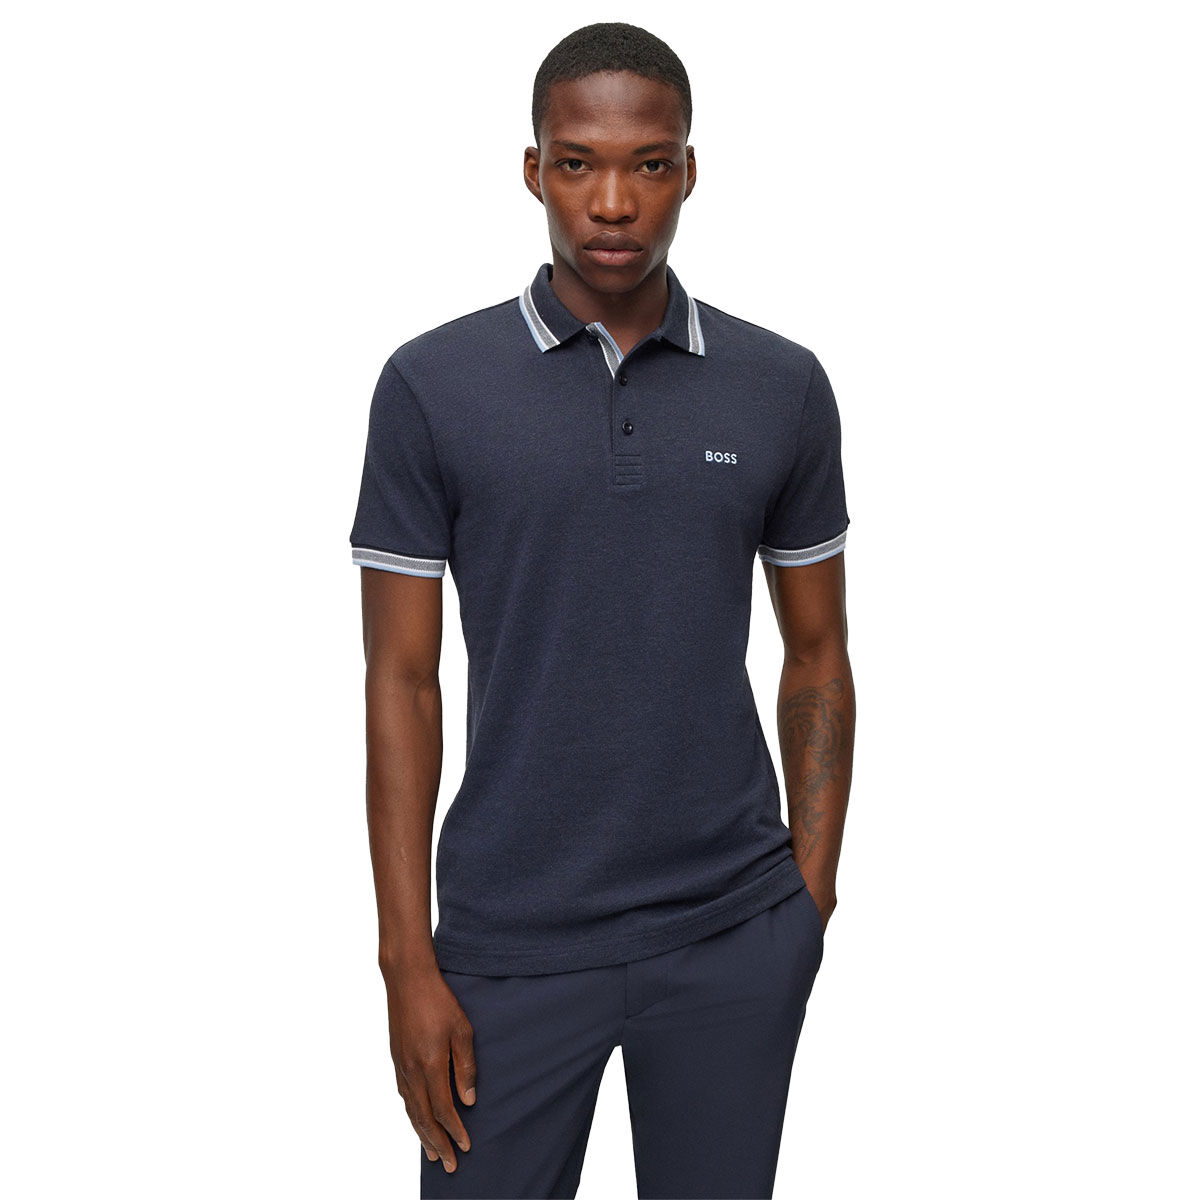 Hugo Boss Men’s Paddy Golf Polo Shirt, Mens, Dark blue/light blue, Medium | American Golf